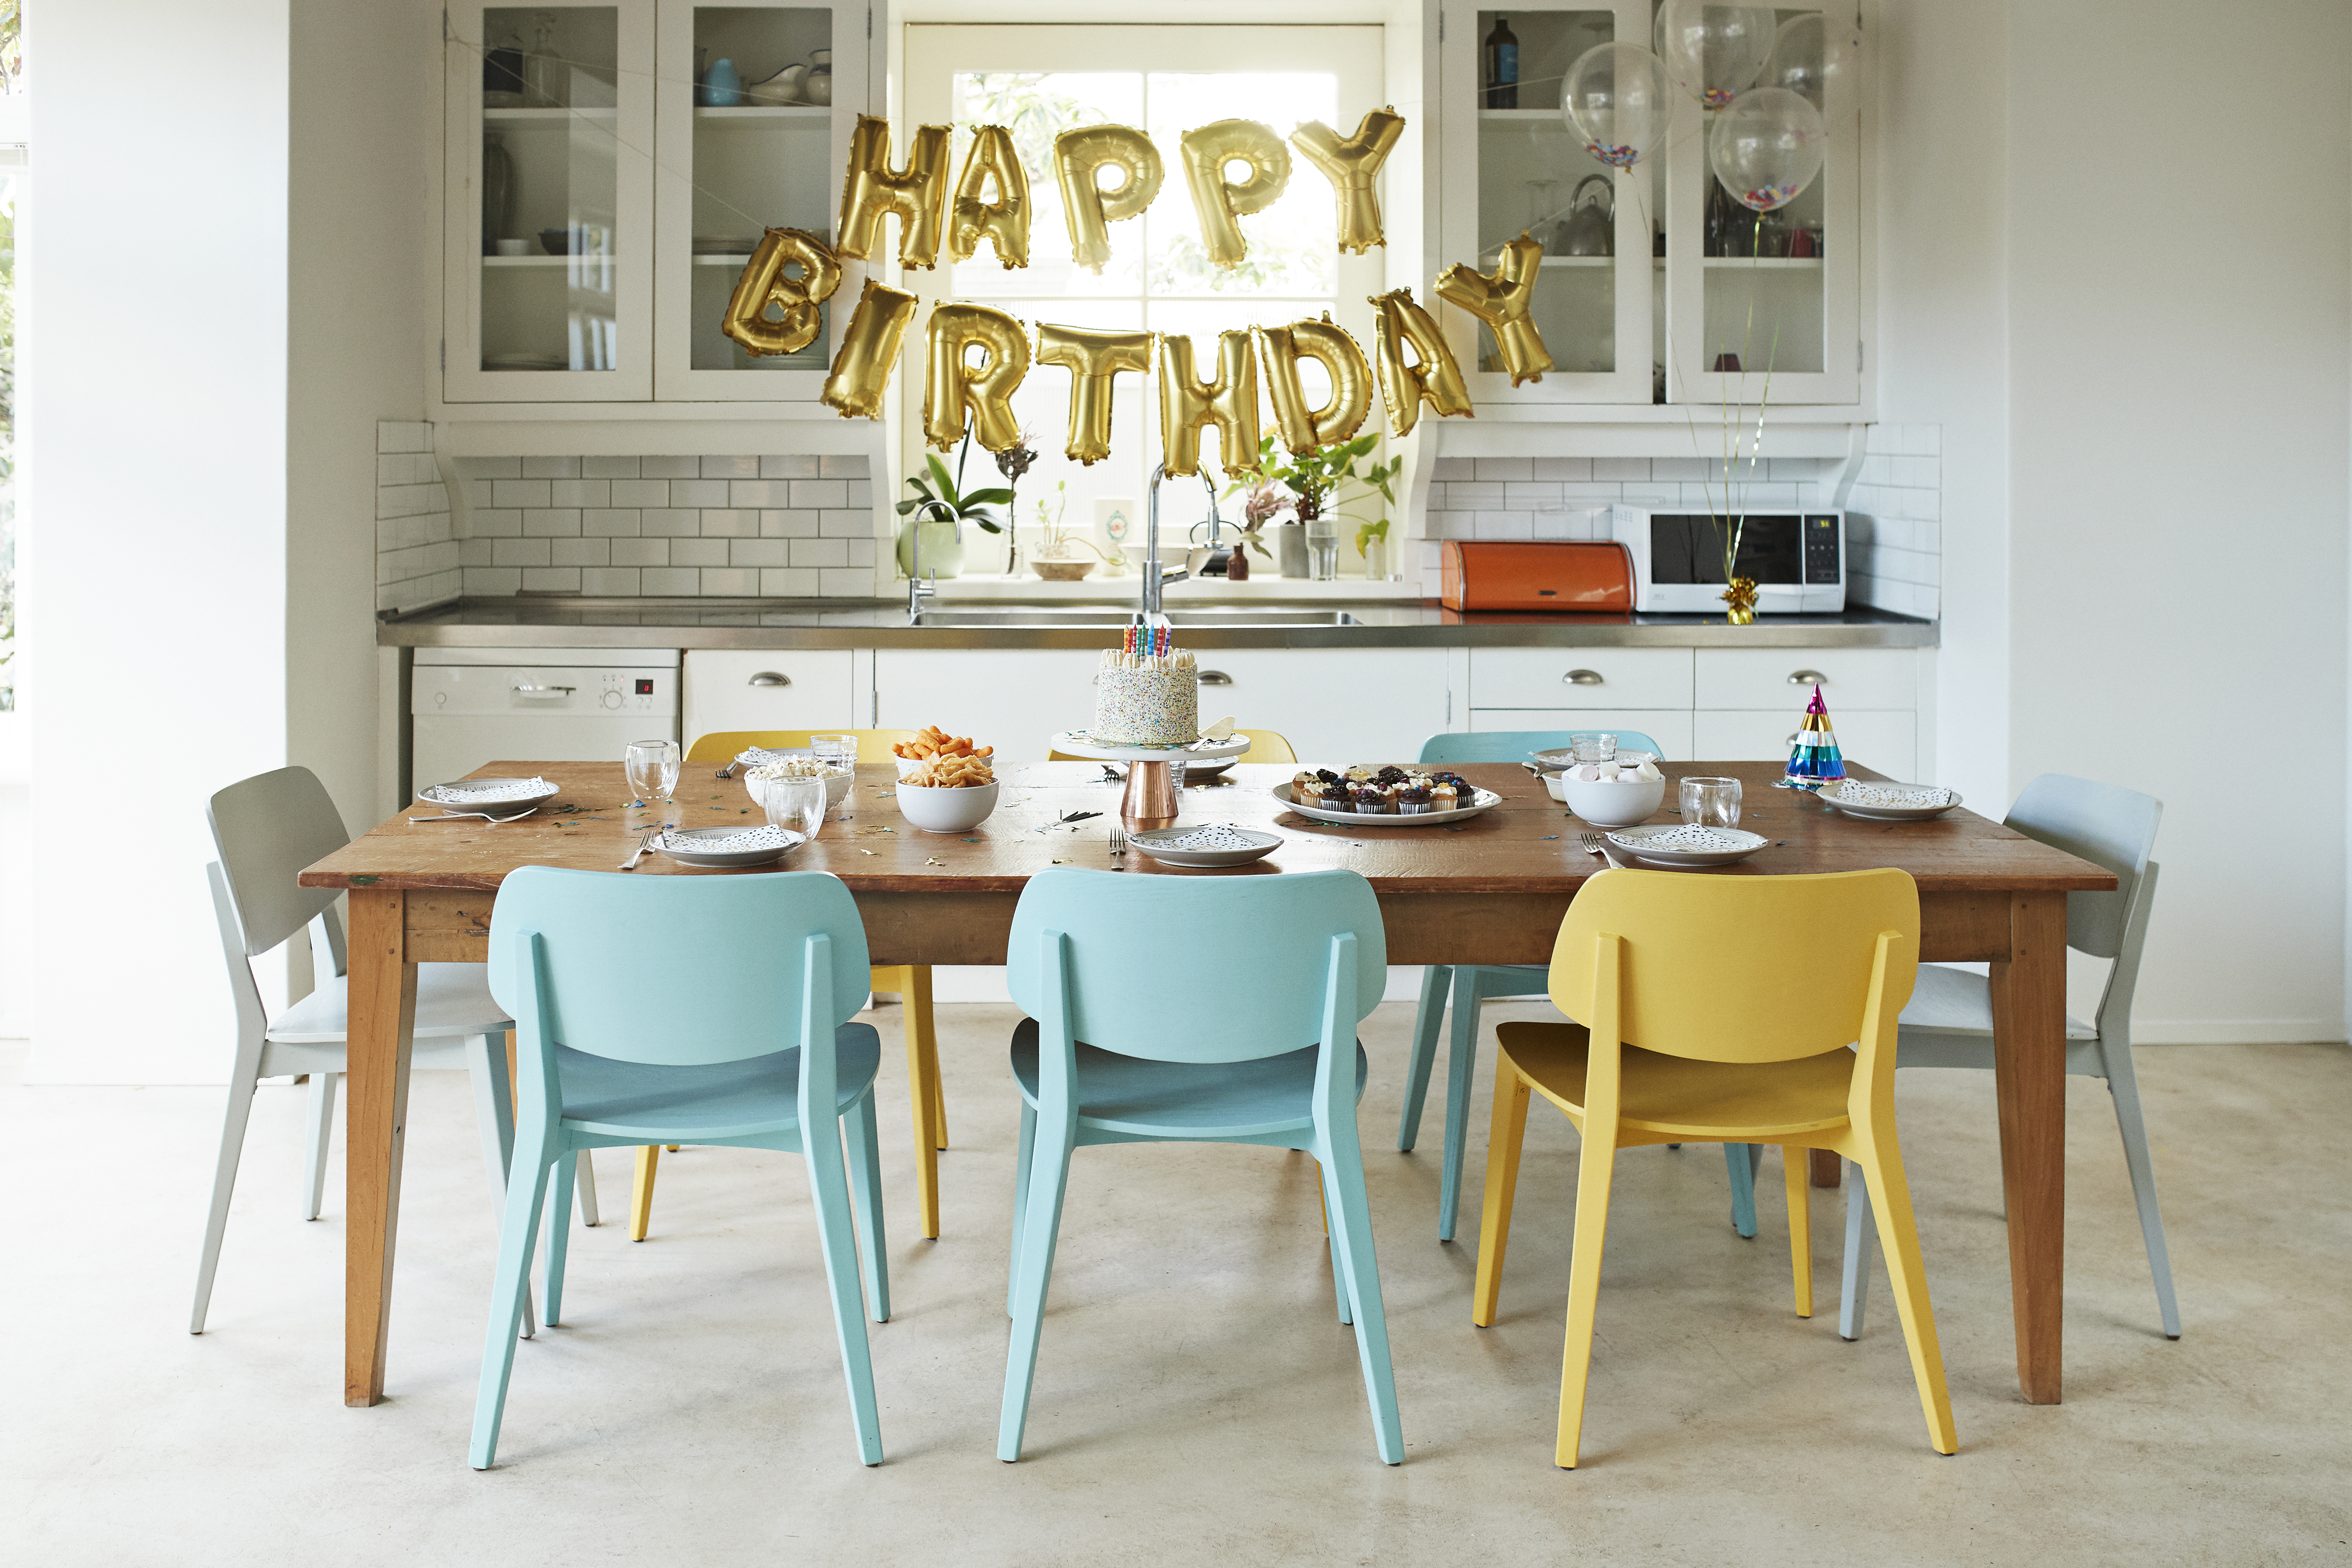 Une fête d'anniversaire | Source : Getty Images